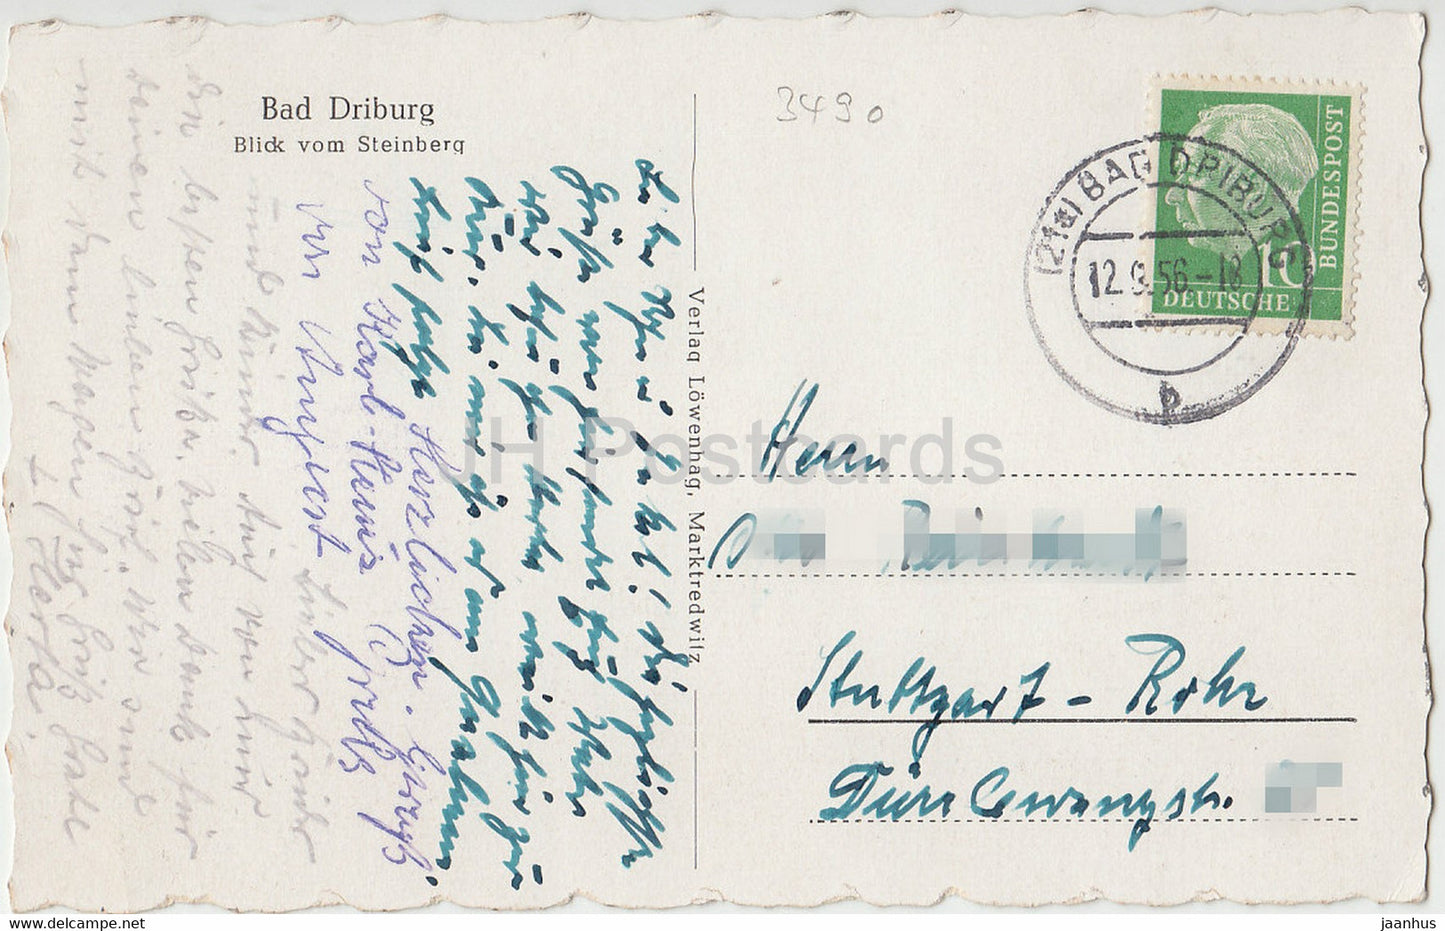 Bad Driburg - Blick vom Steinberg - alte Postkarte - 1956 - Deutschland - gebraucht